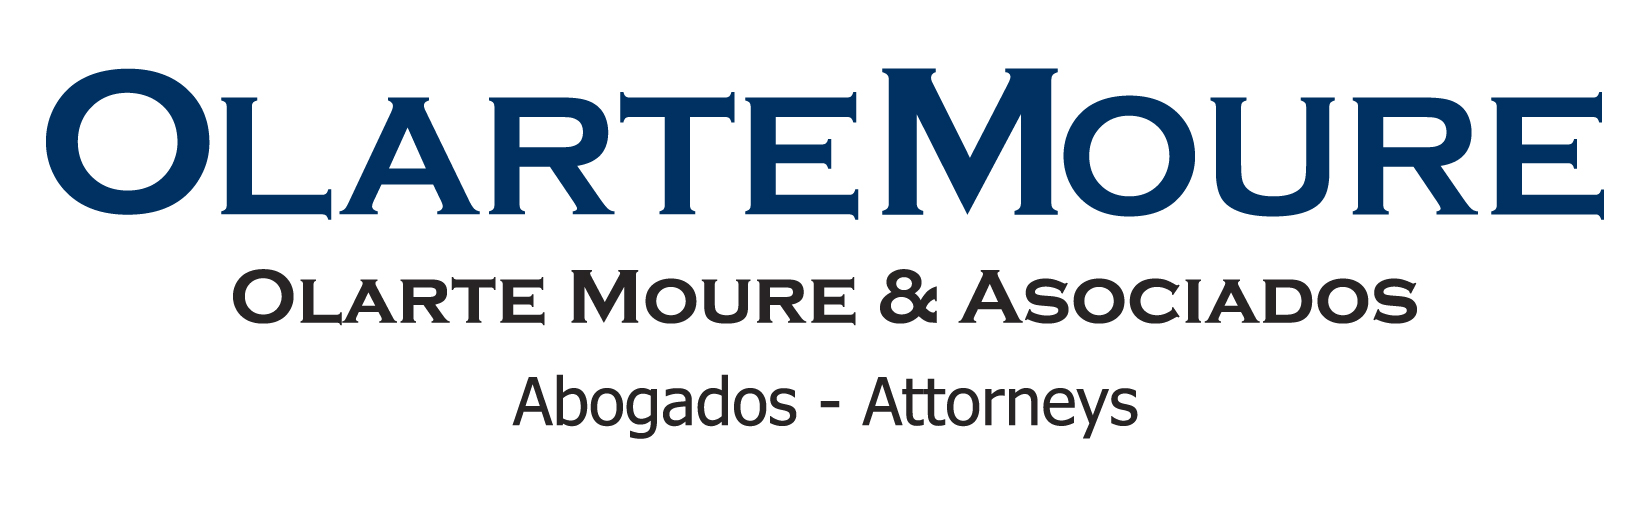 Sponsor logo - Olarte Moure & Asociados